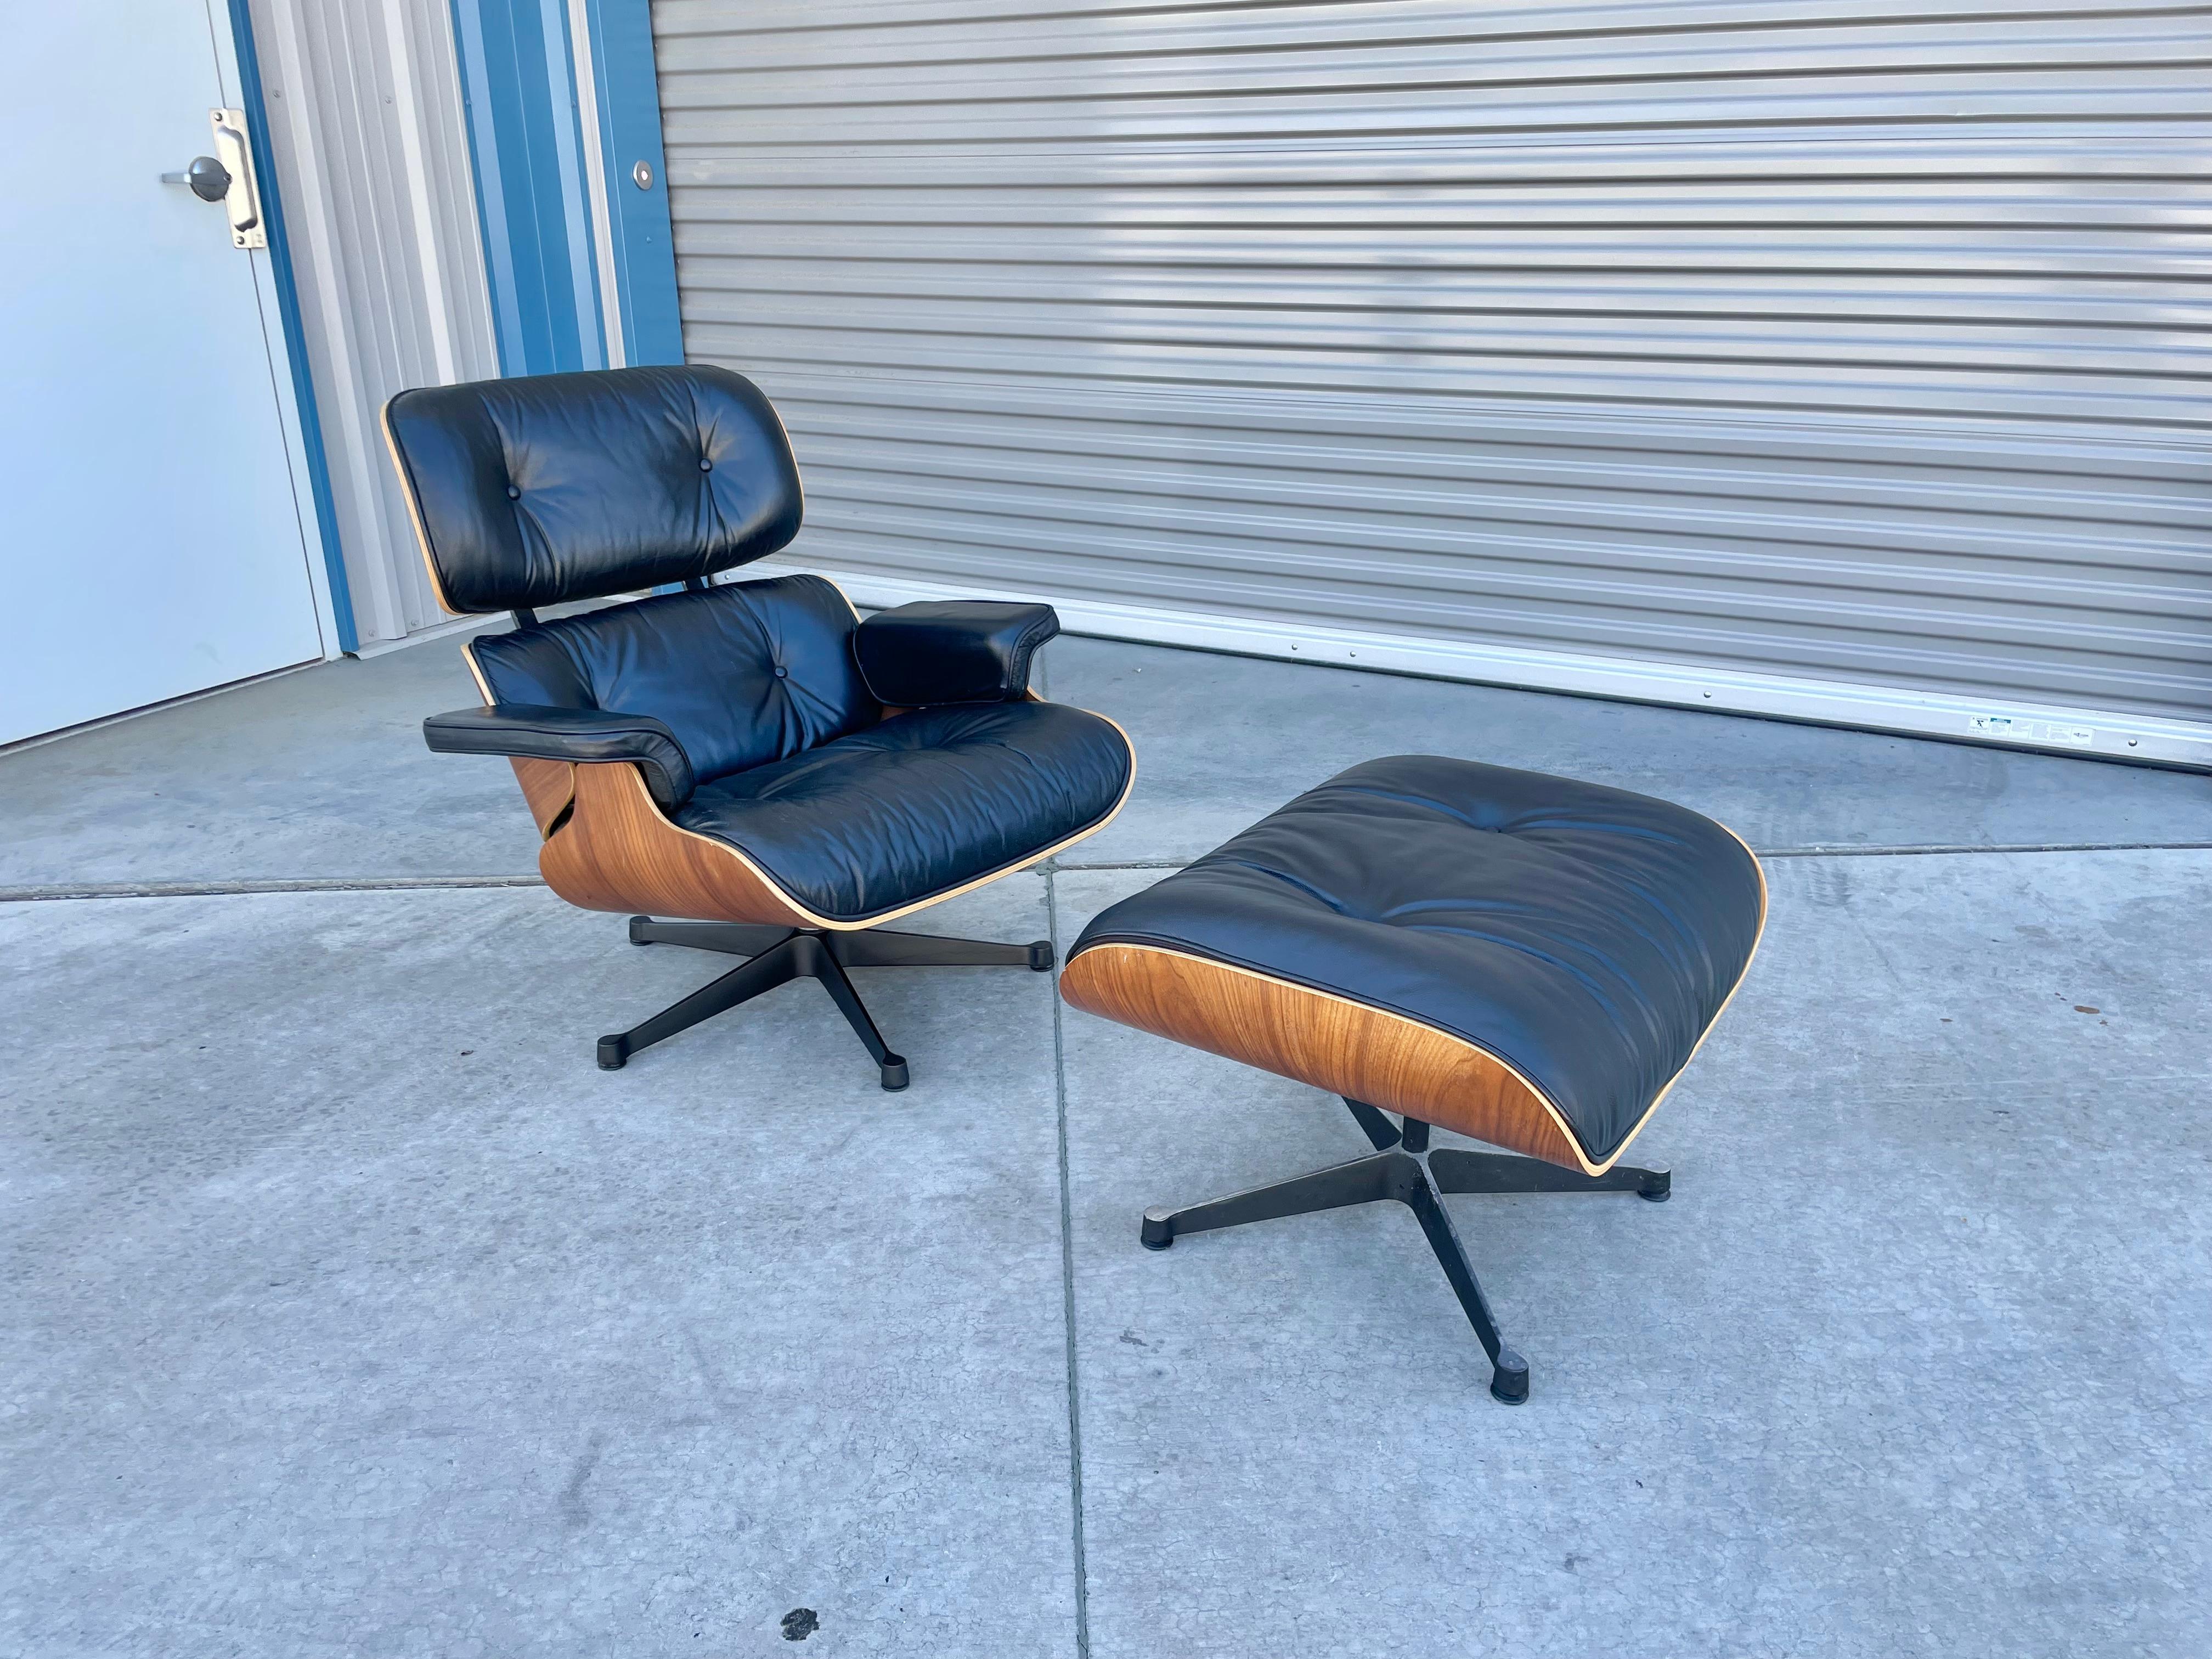 Ensemble chaise longue et ottoman du milieu du siècle, conçu par Charles Eames et fabriqué par Vitra vers les années 1980. Cet ensemble est vraiment unique en son genre avec son revêtement en cuir noir et son cadre unique en coquille de noyer qui